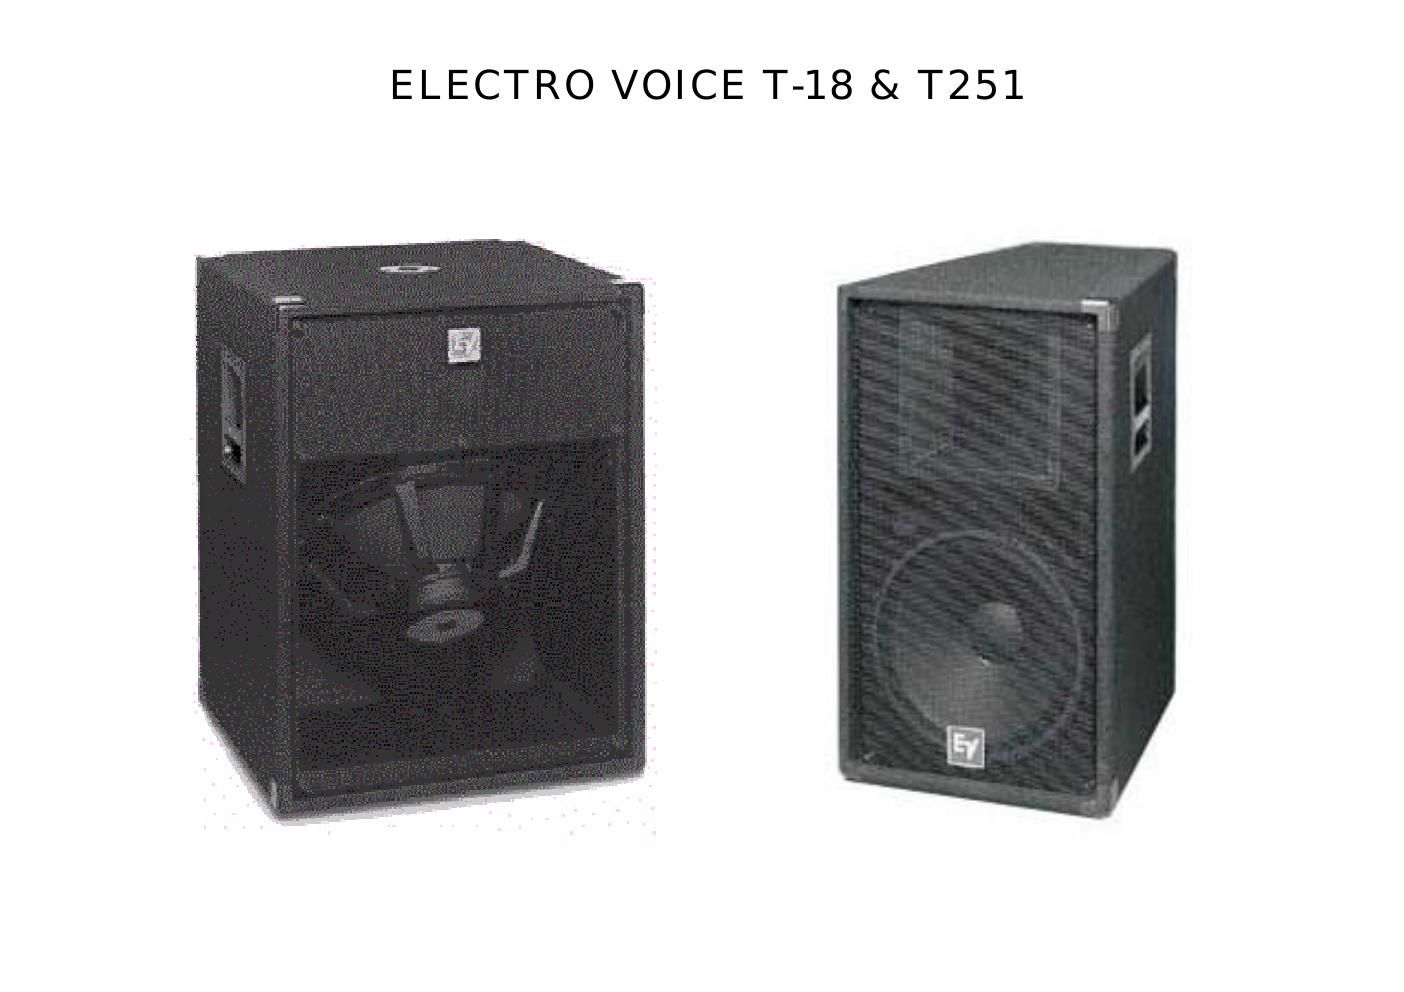 electro voice t18 speakerplans